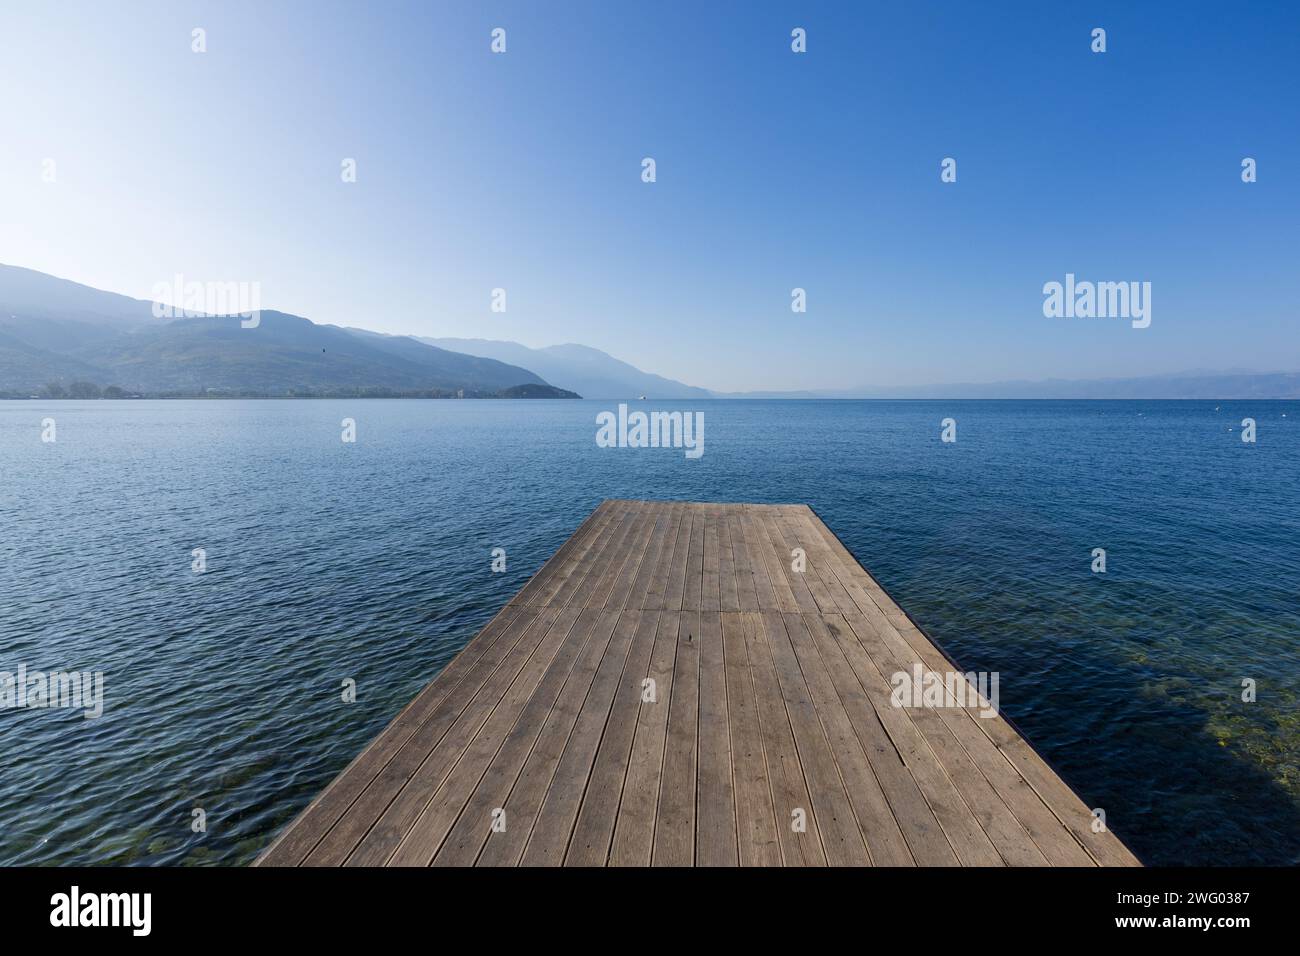 Un molo di legno sulla passerella vicino a Ohrid, sul lago di Ohrid, nella Macedonia del Nord, che si stende sulle acque blu del lago in una splendida giornata di sole. Foto Stock